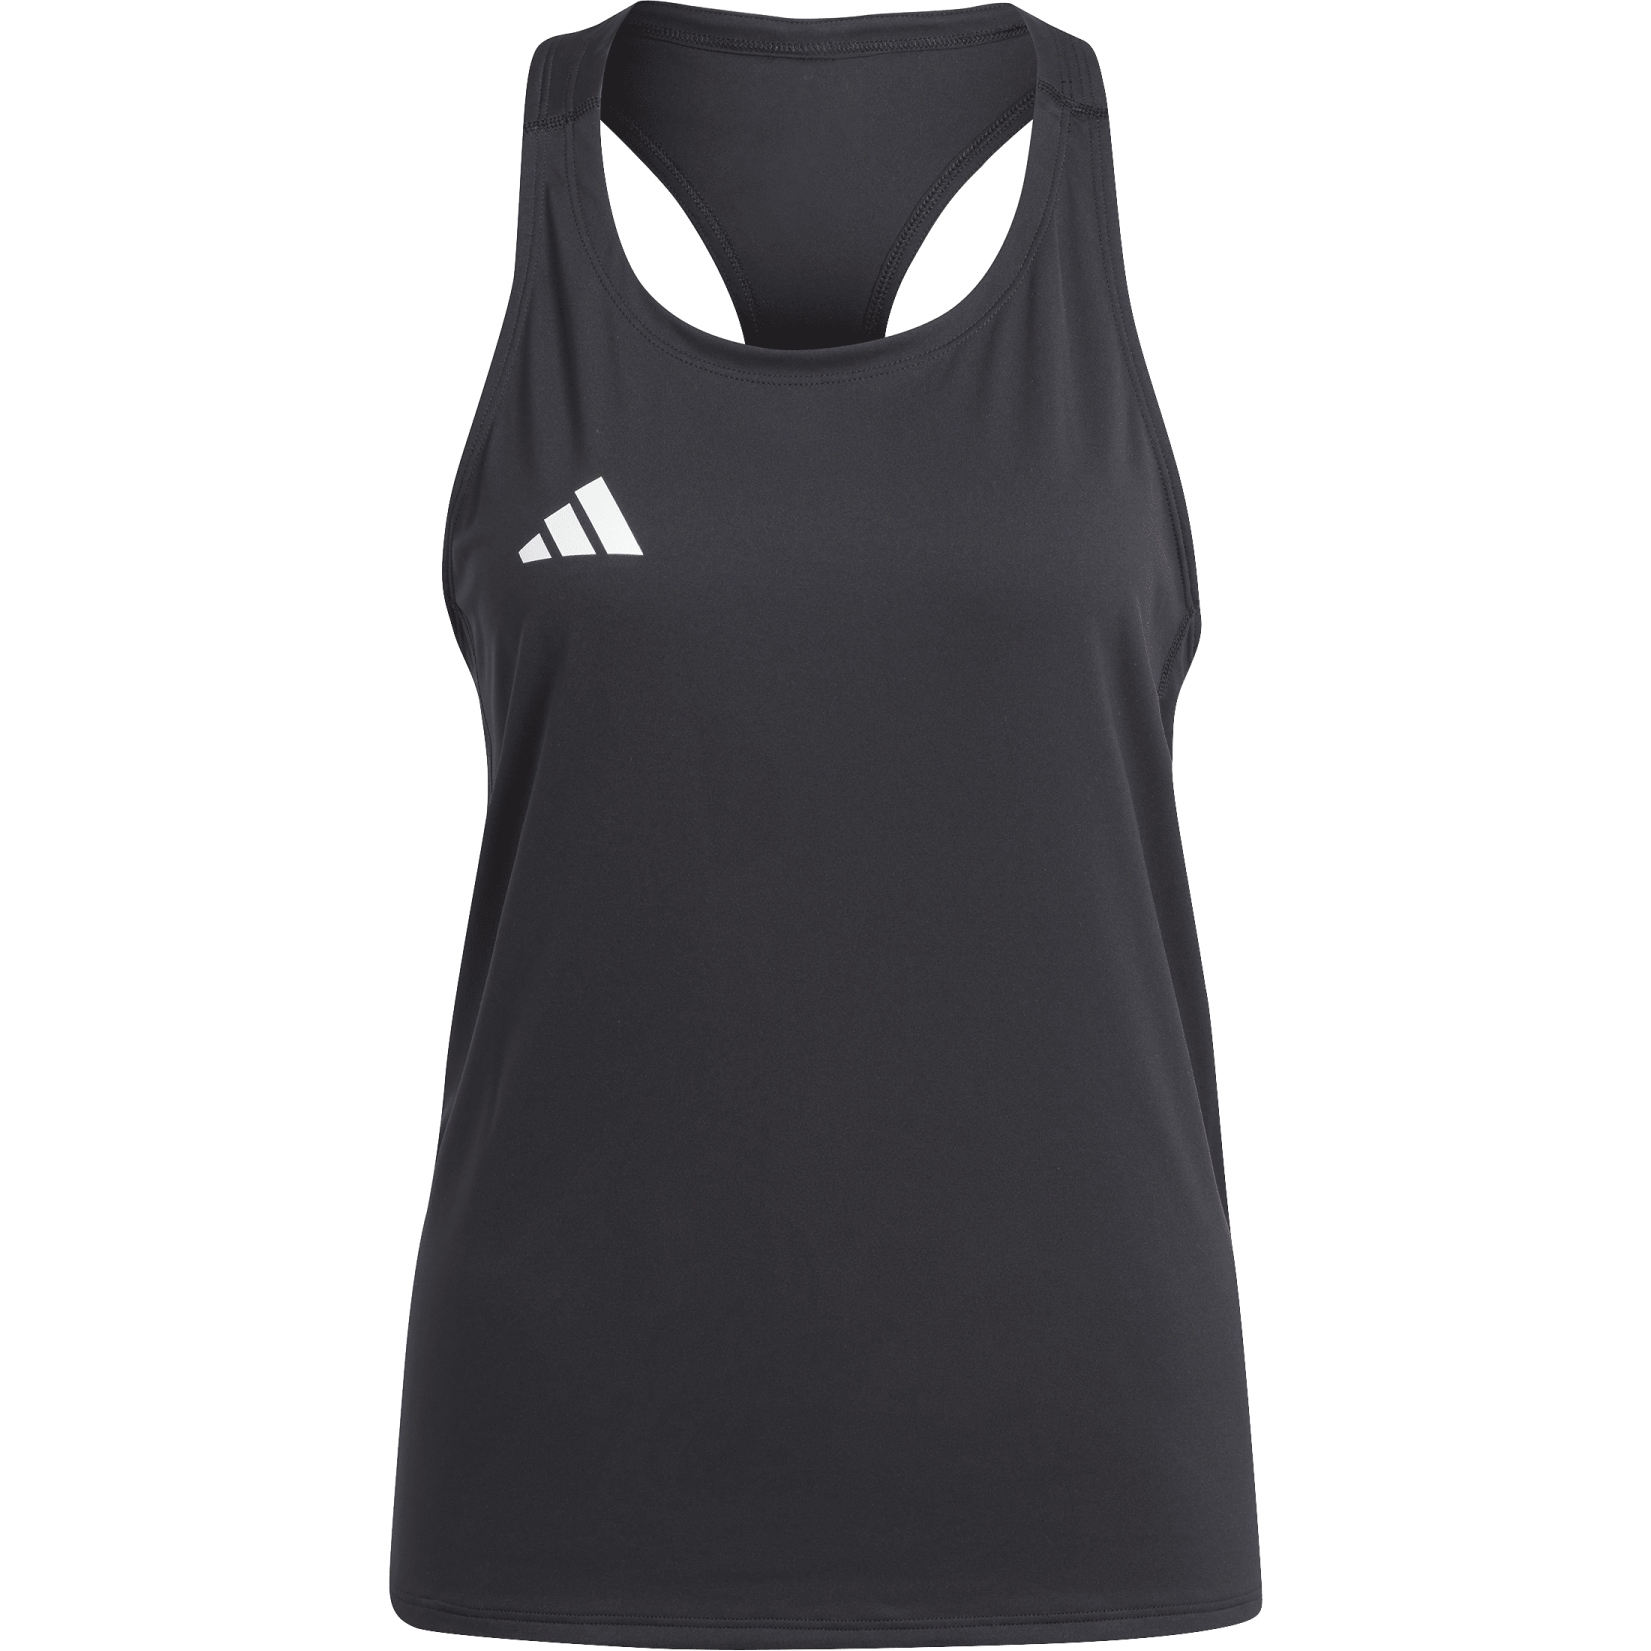 adidas Adizero Rain Womens Running Track Pants - Black – Start Fitness